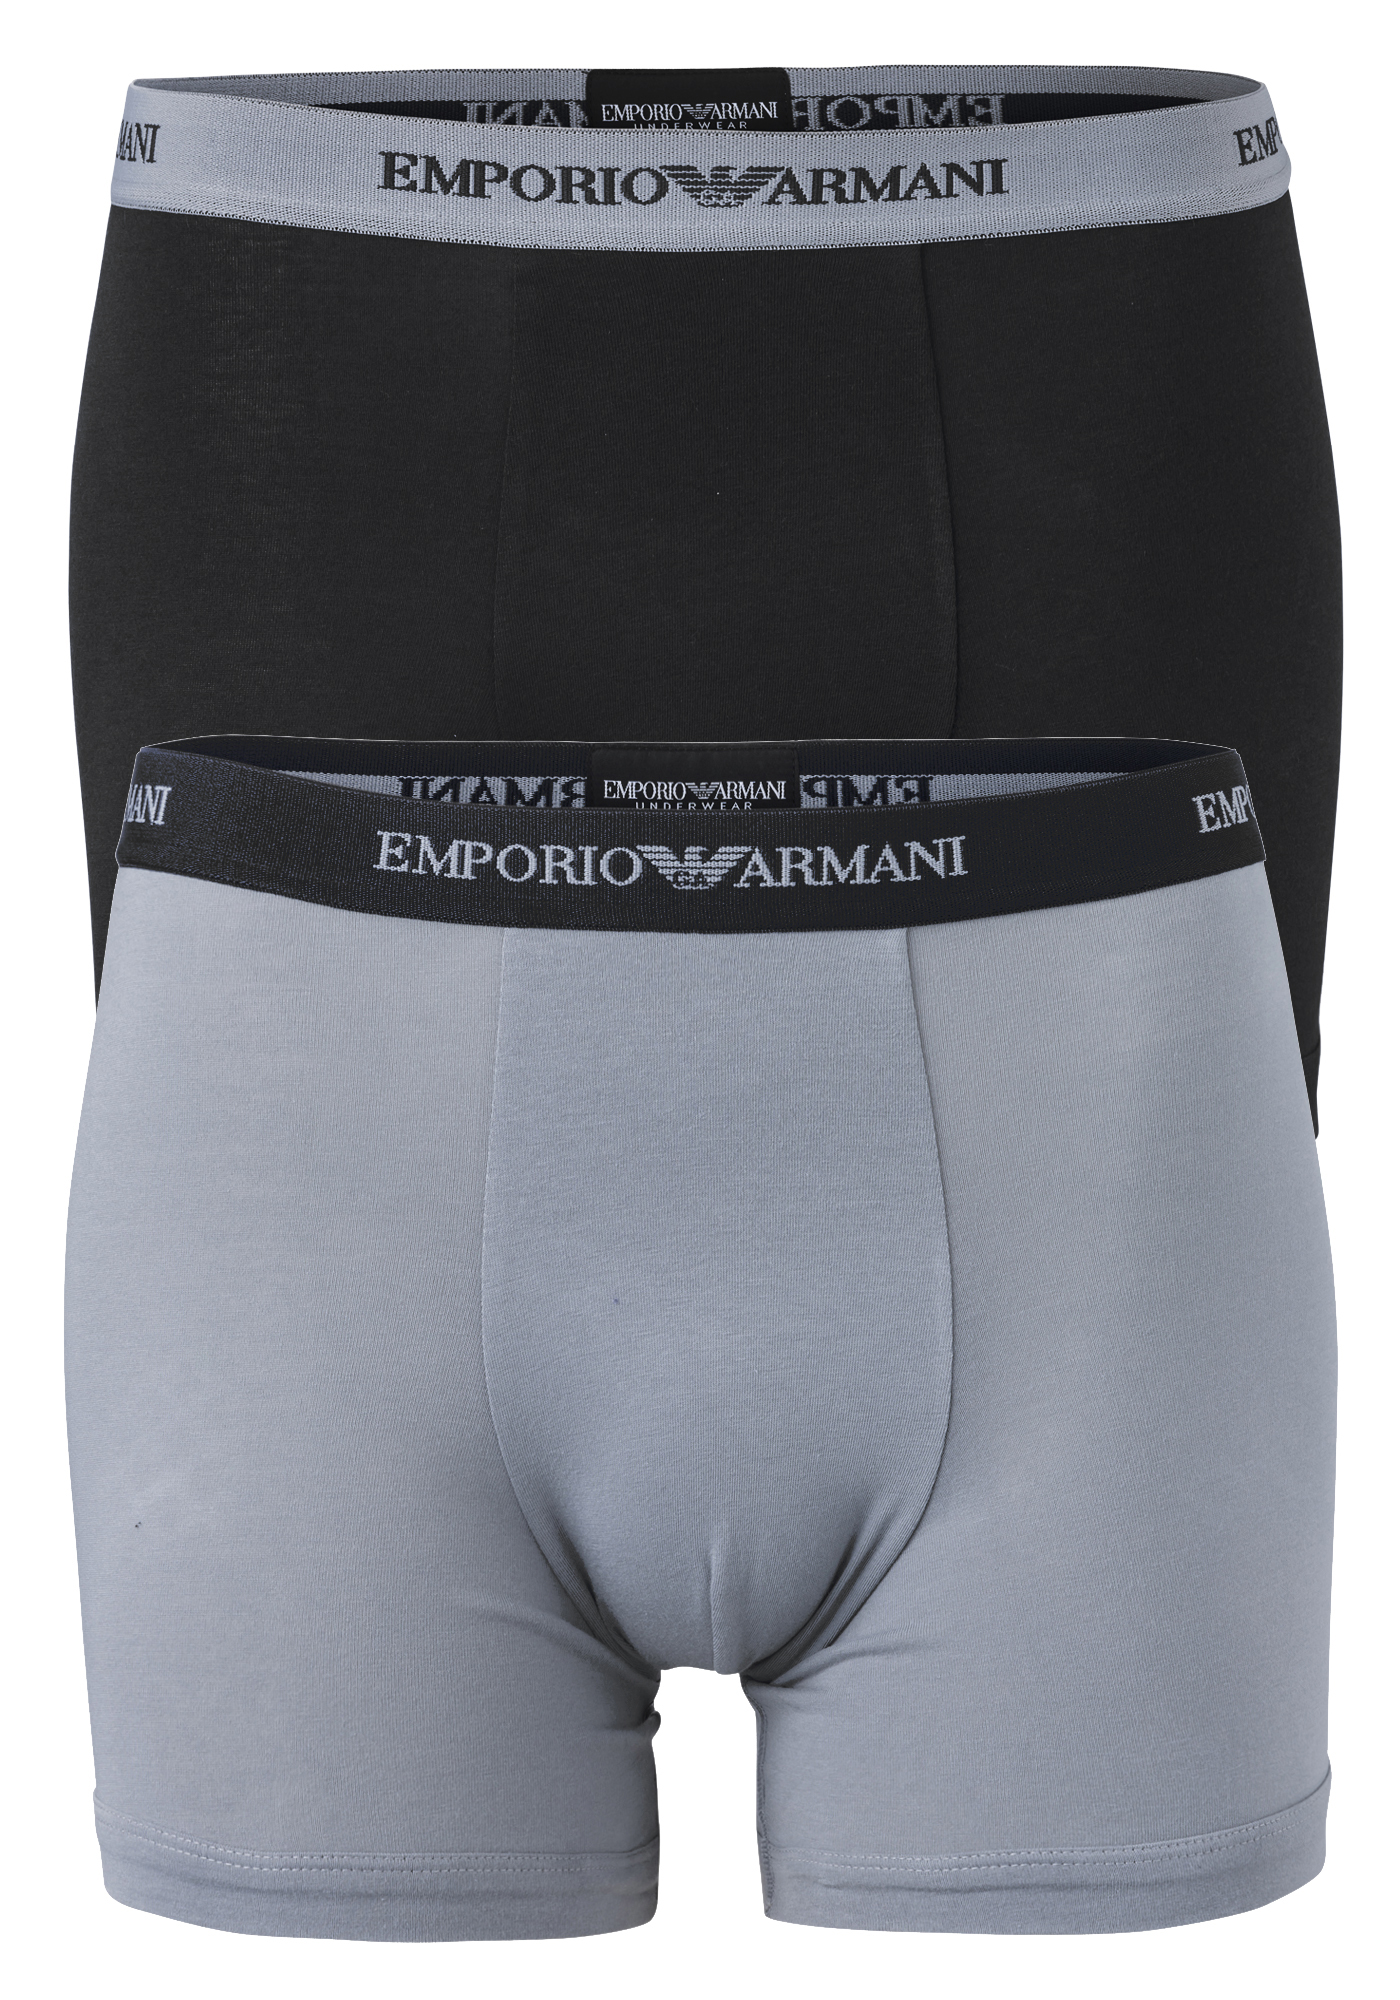 Emporio Armani Boxers Essential Core (2-pack), heren boxers normale lengte, zwart en grijs